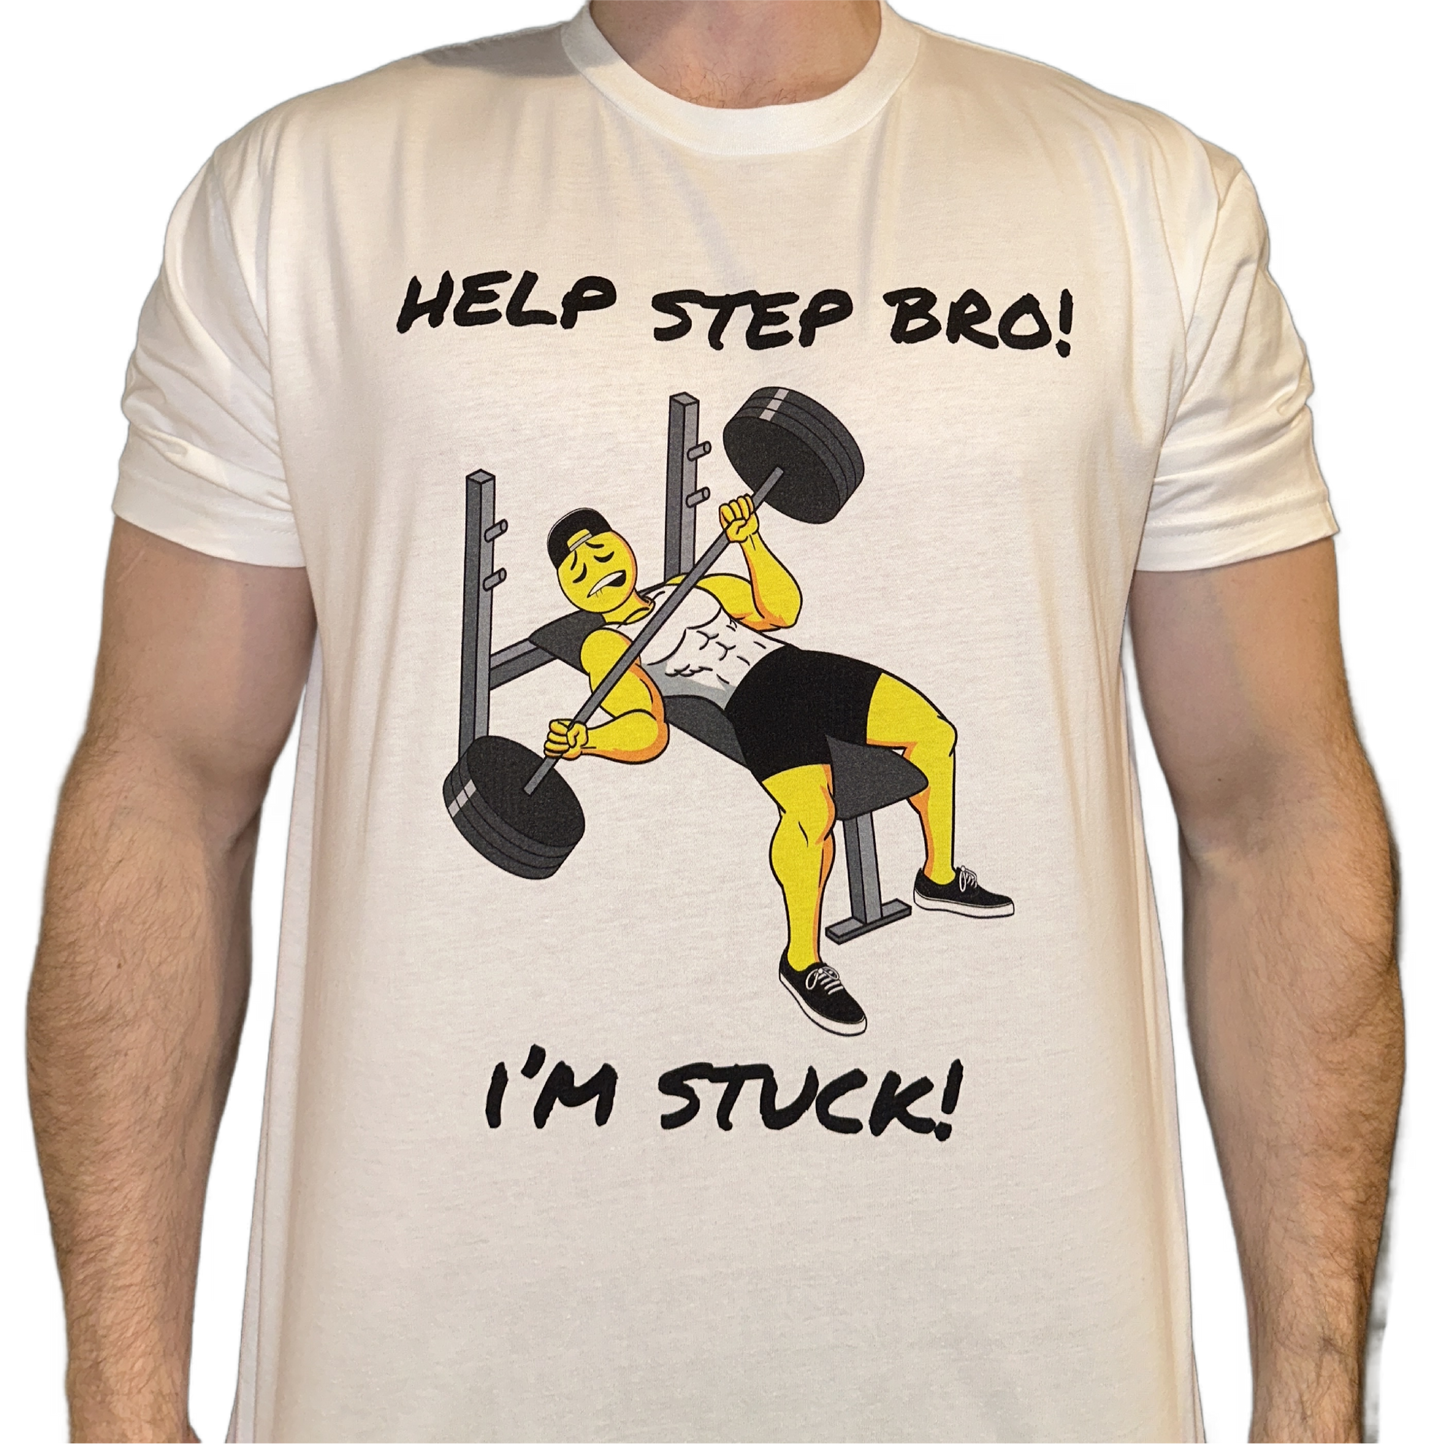 HELP STEP BRO! I'M STUCK!